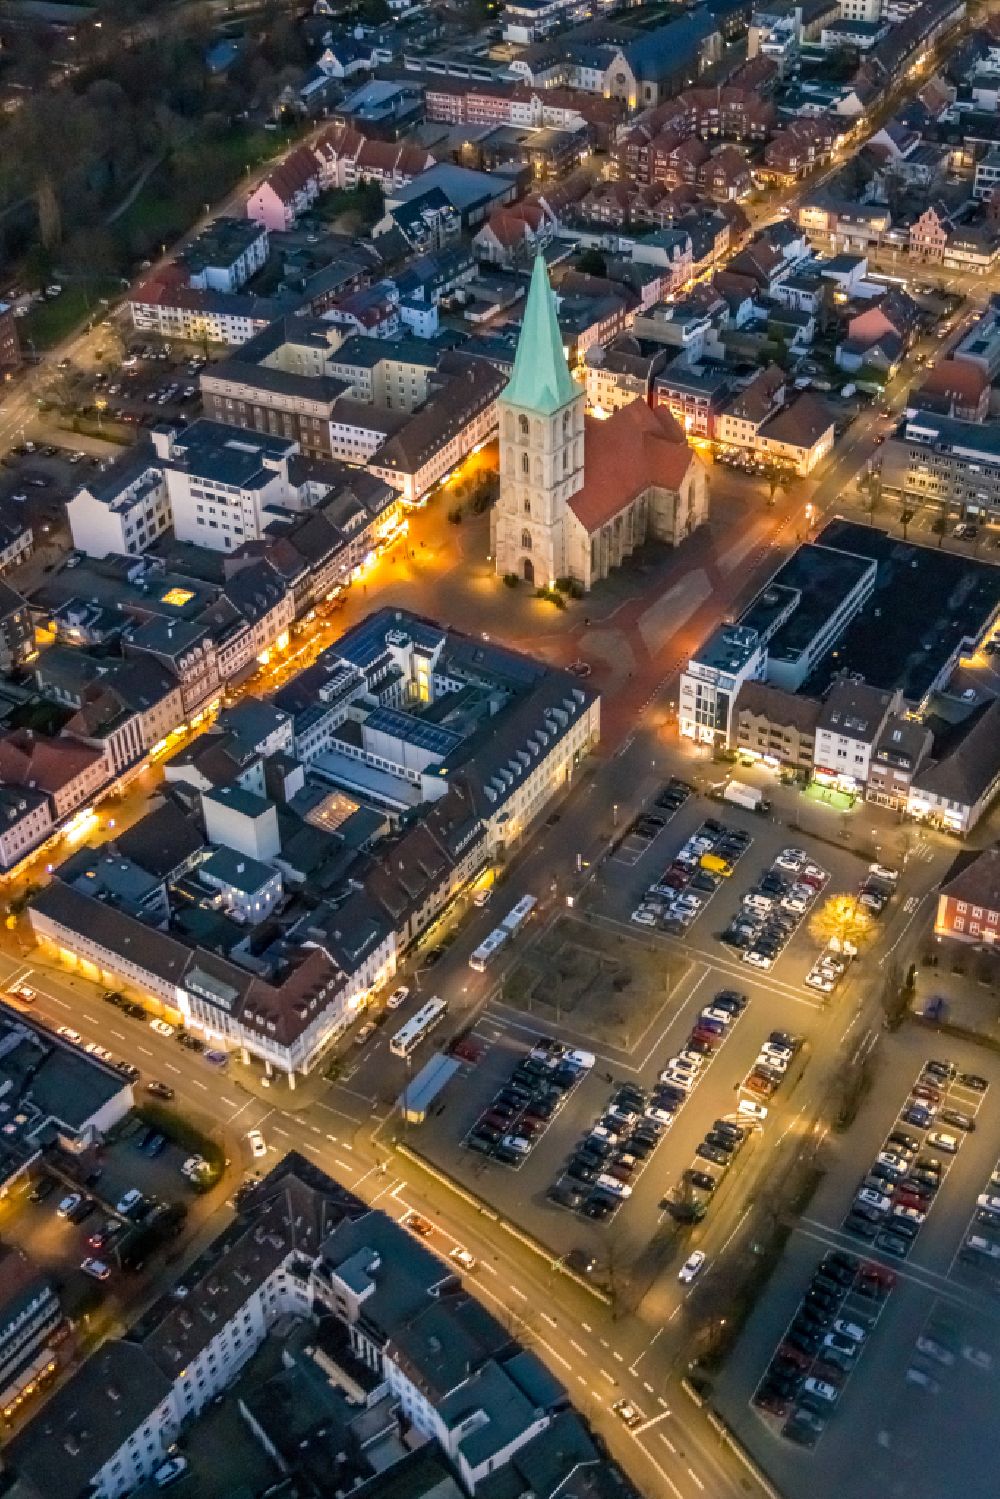 Nacht-Luftaufnahme Hamm - Nachtluftbild Platz- Ensemble Santa-Monica-Platz in Hamm im Bundesland Nordrhein-Westfalen, Deutschland